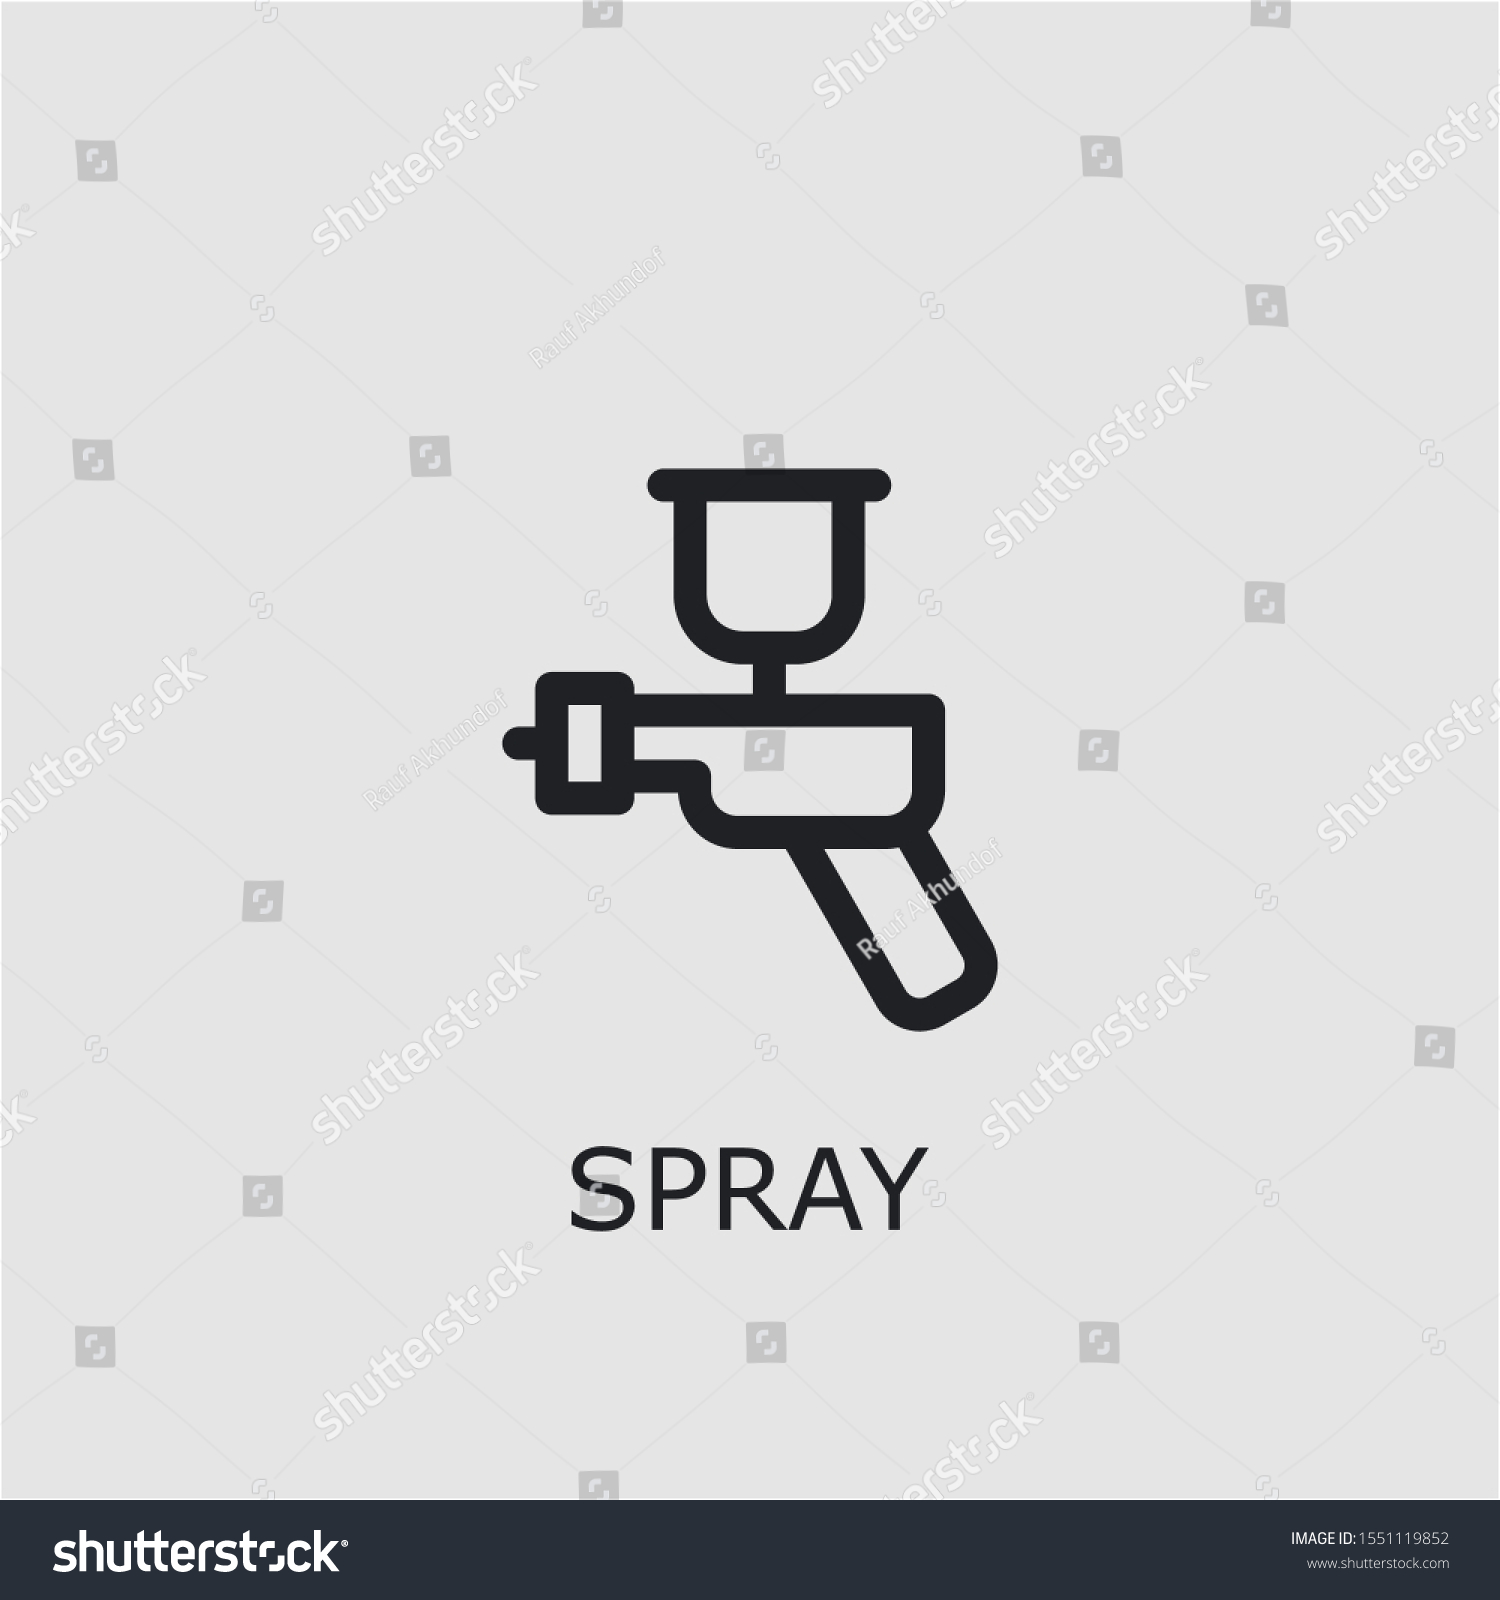 Professional Vector Spray Icon Spray Symbol Stock Vector (Royalty Free ...